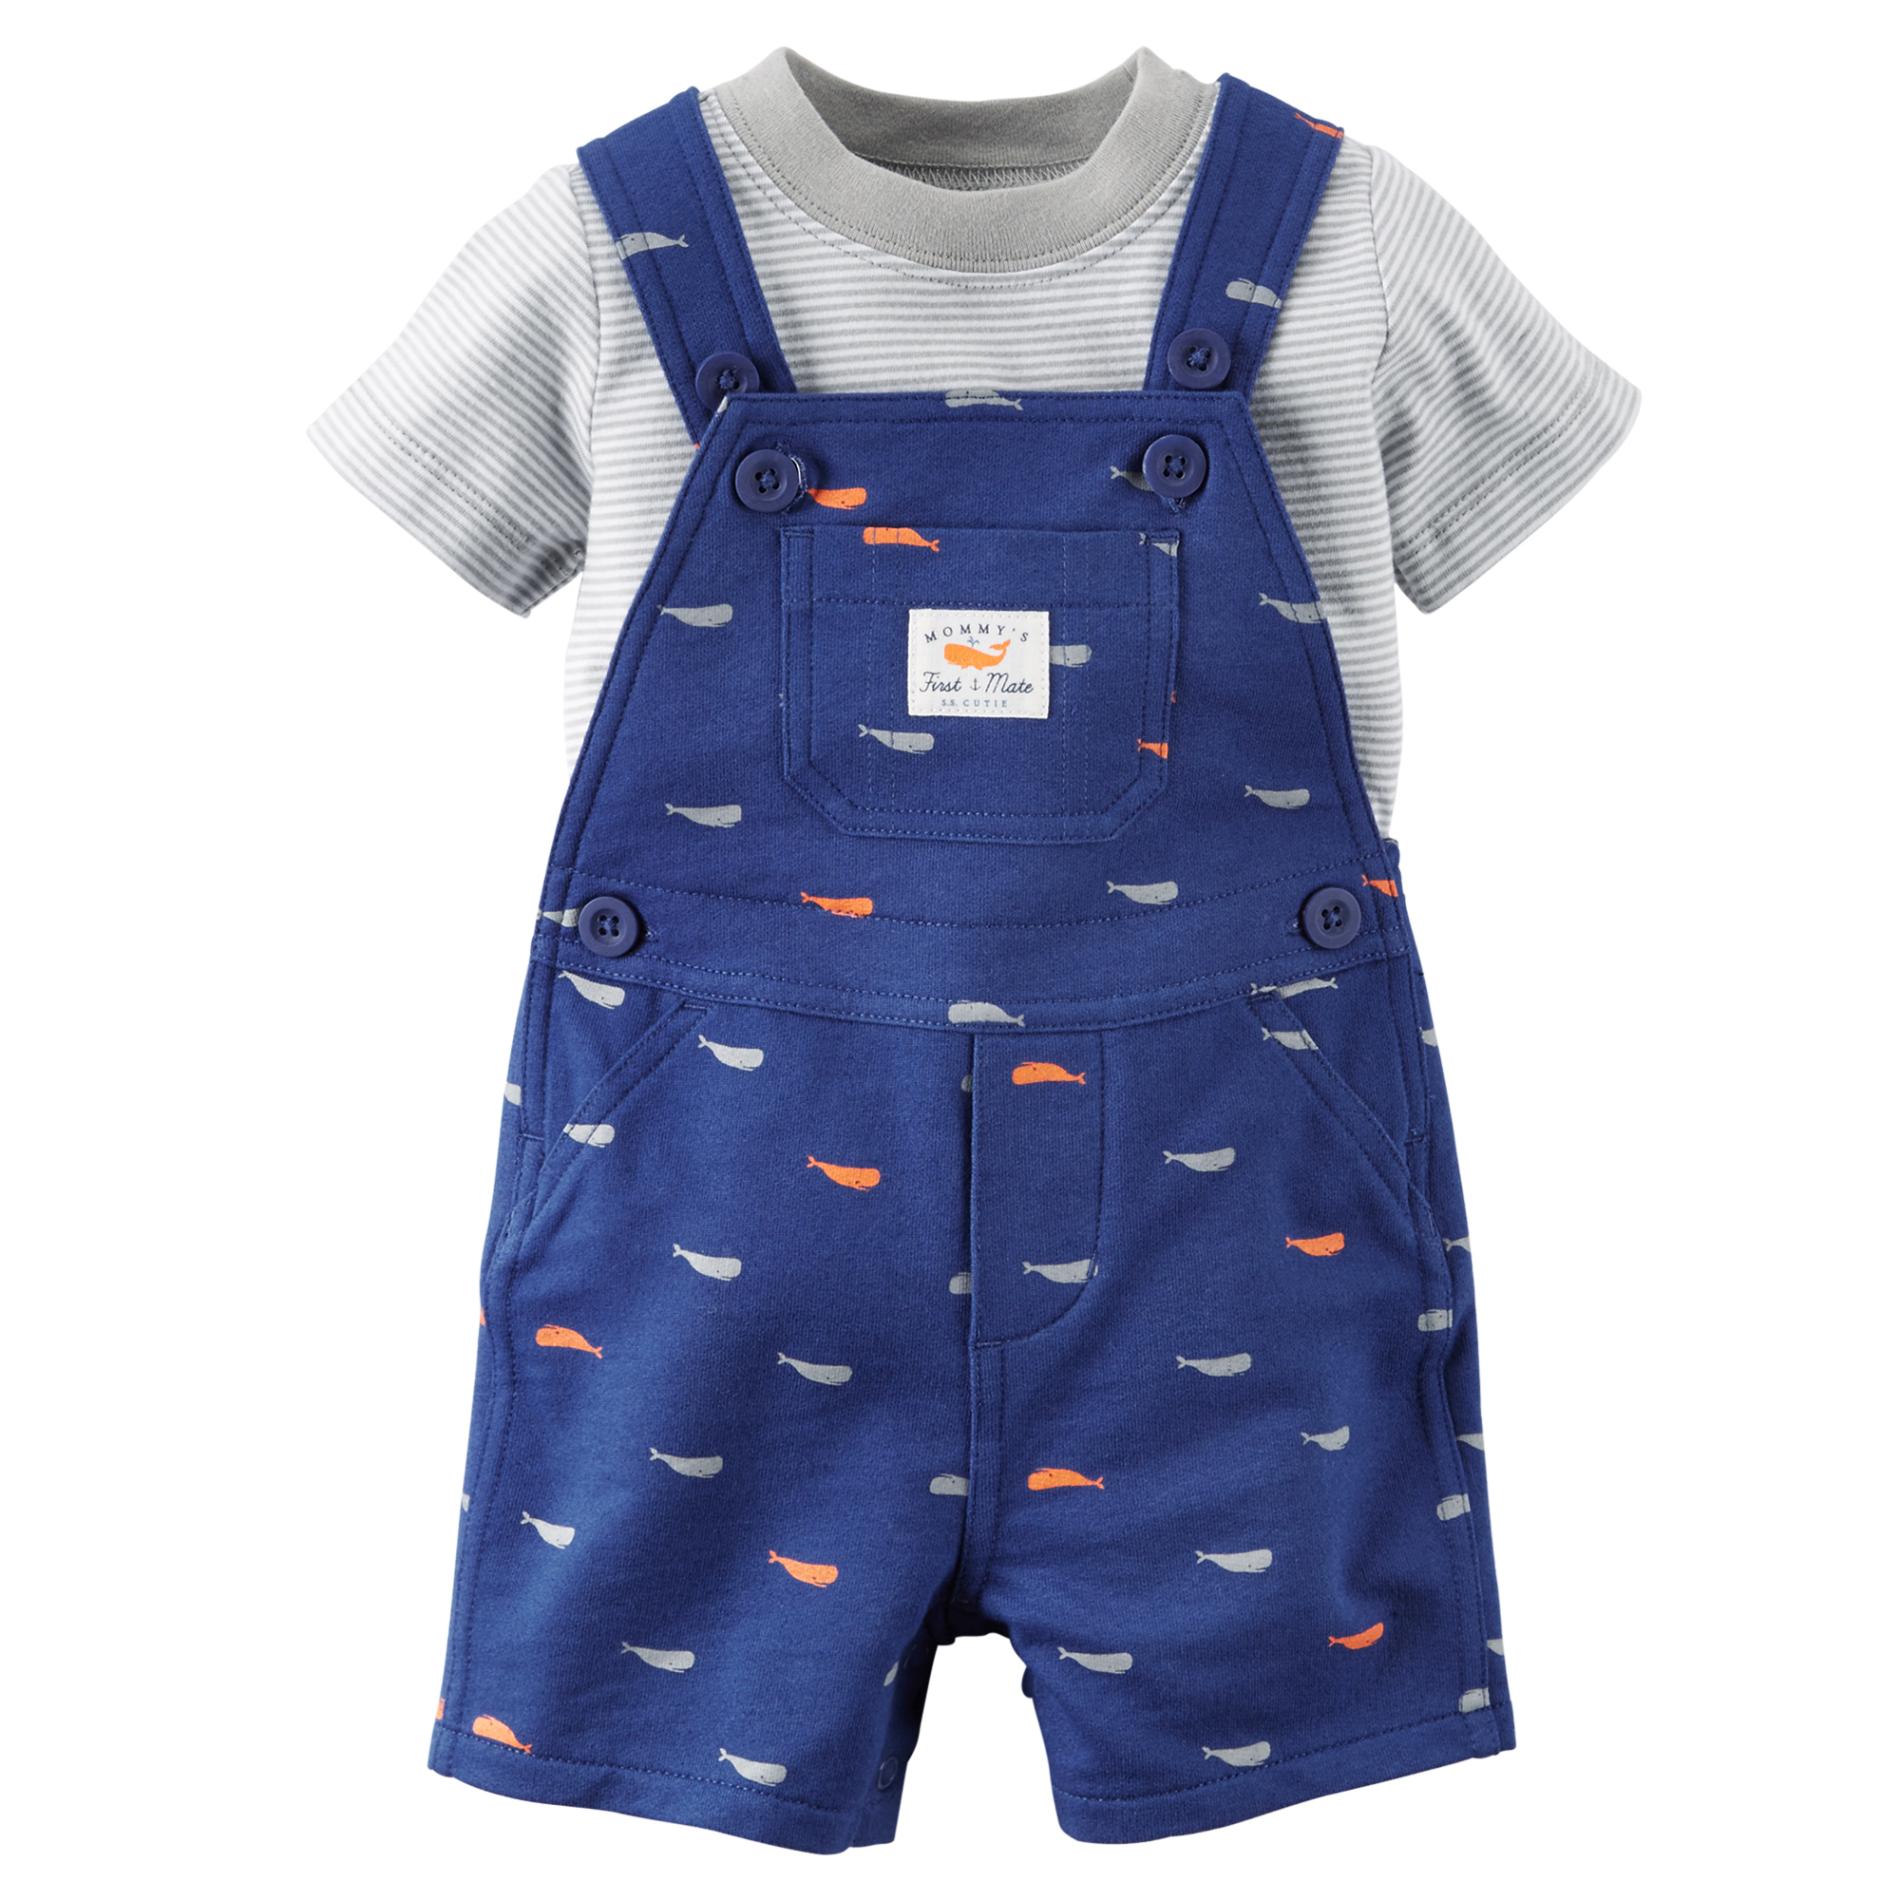 Carter's Newborn & Infant Boy's Shortalls & T-Shirt - Whales